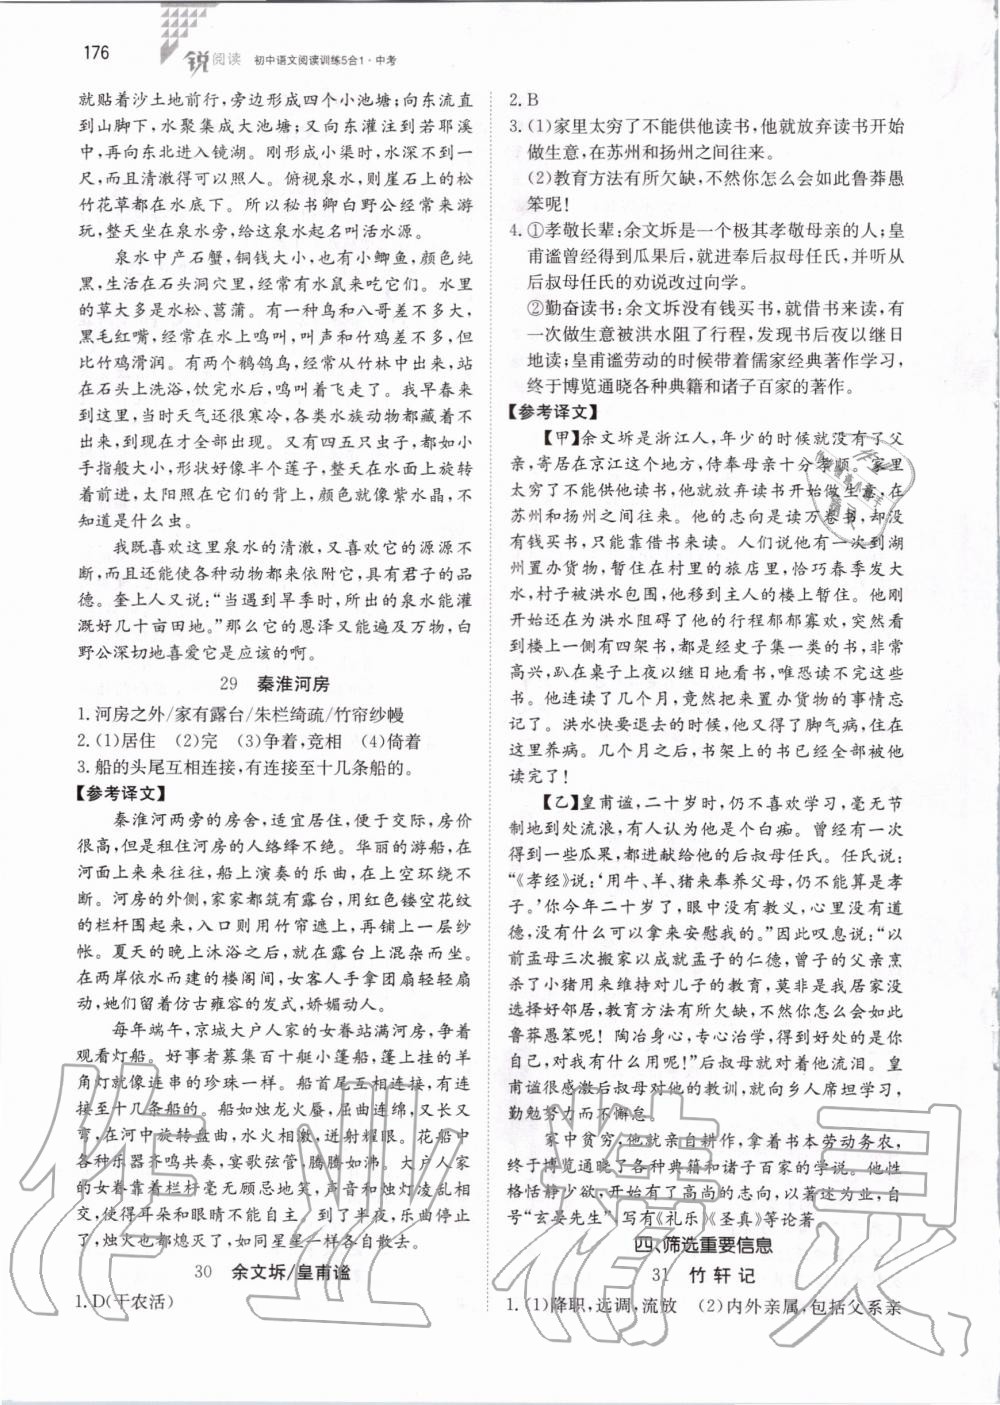 2019年锐阅读初中语文阅读训练5合1中考 第22页